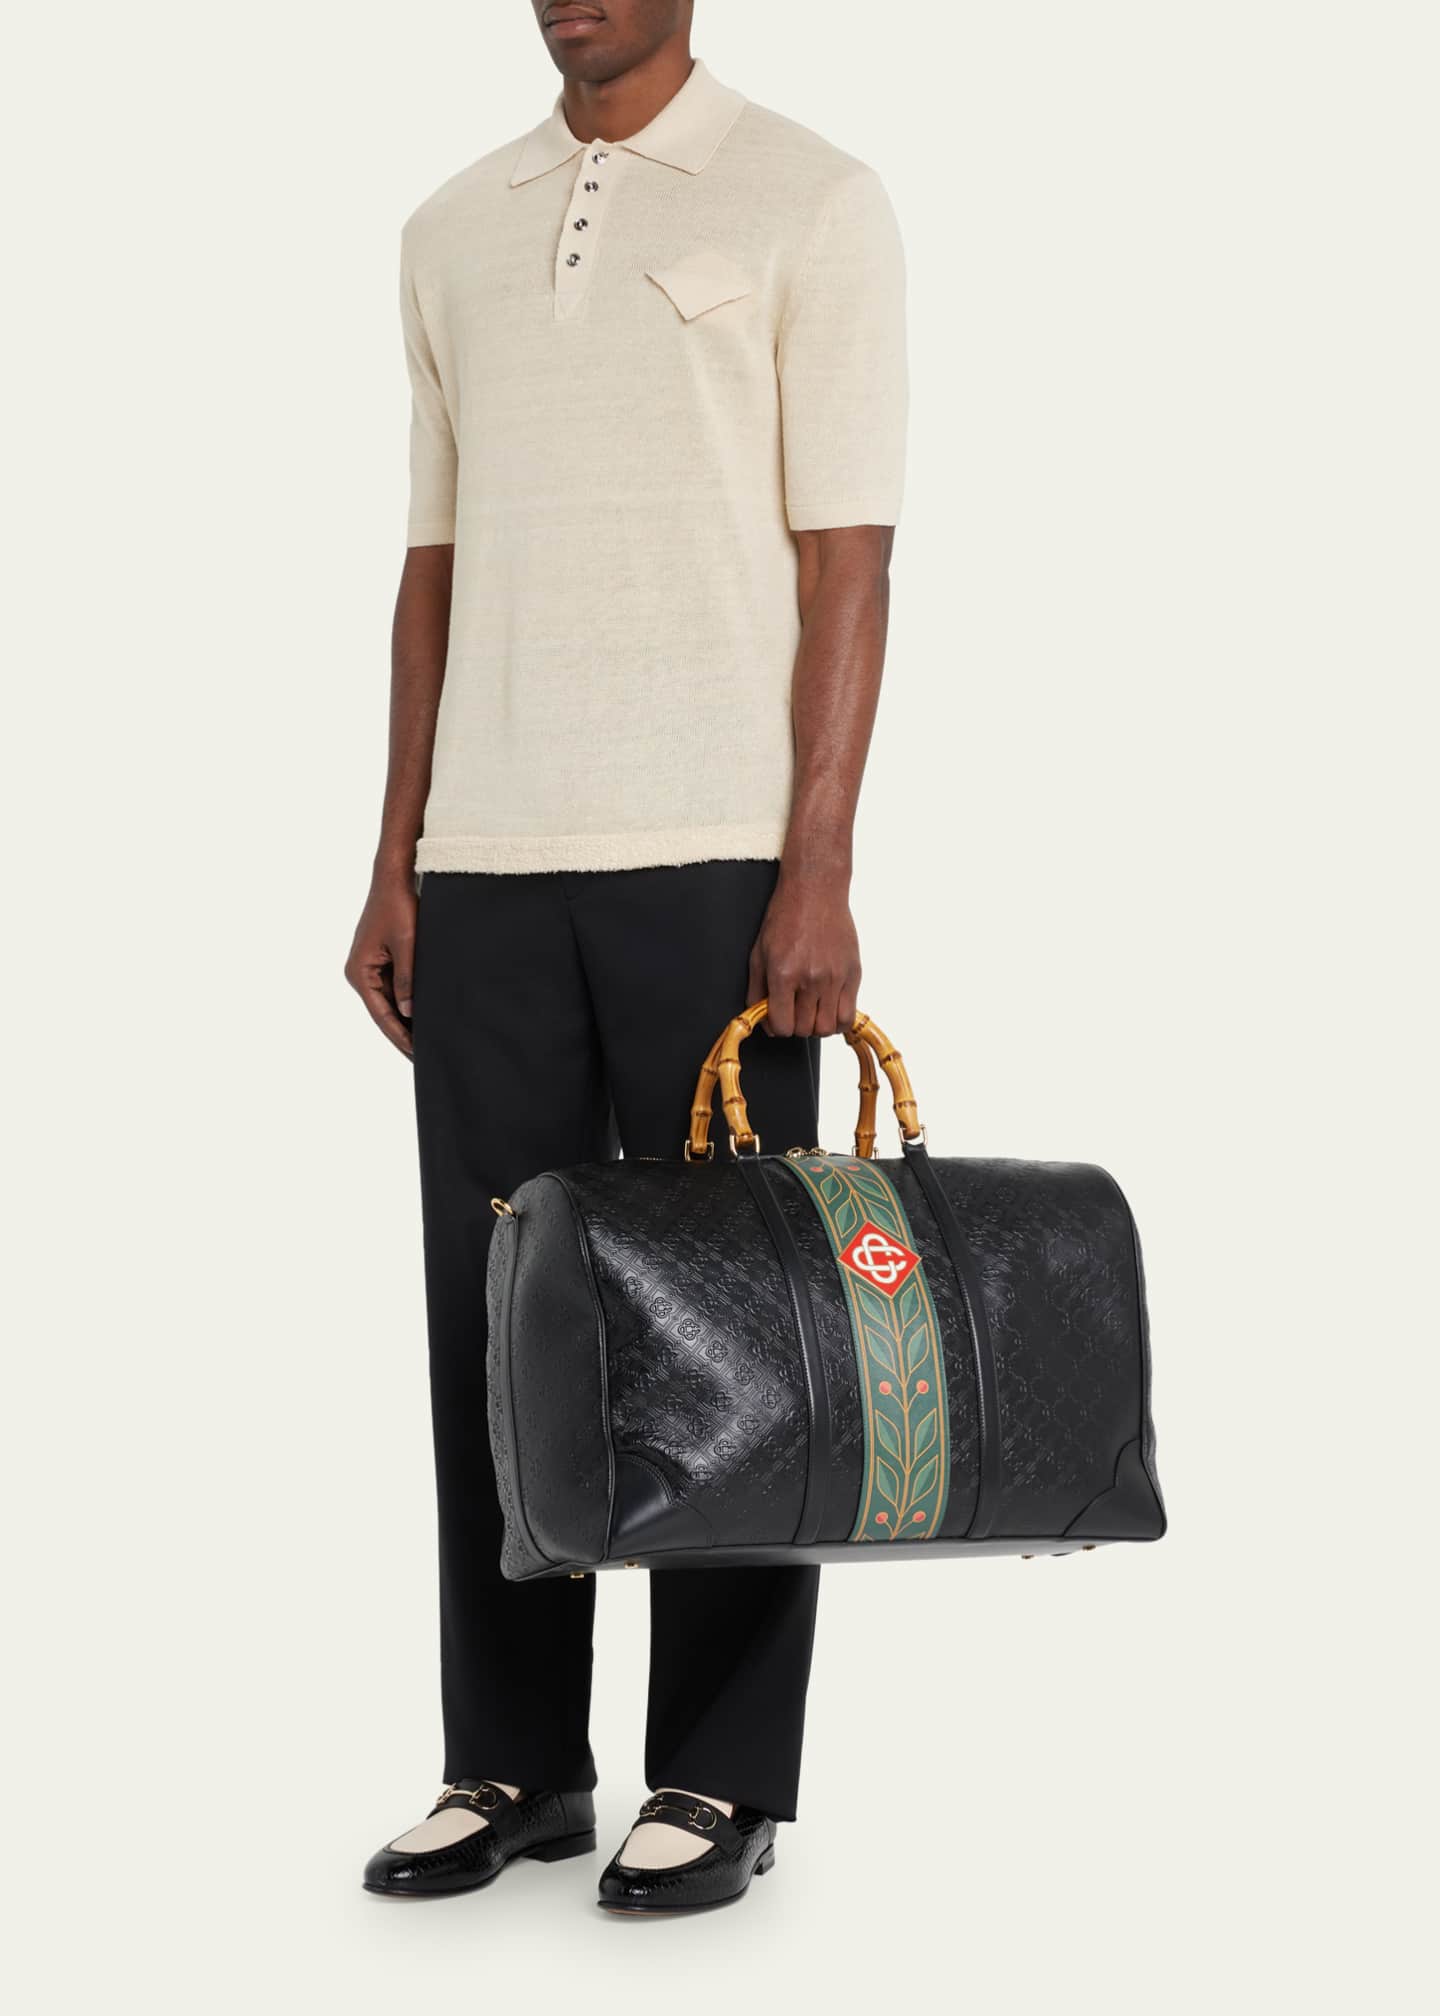 Casablanca Men's Monogram Leather Weekender Duffel Bag